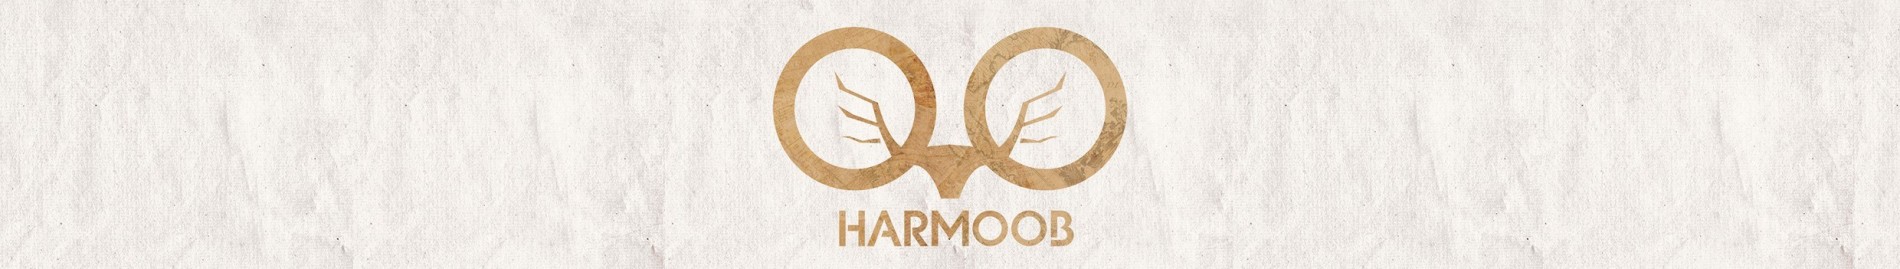 Harmoob